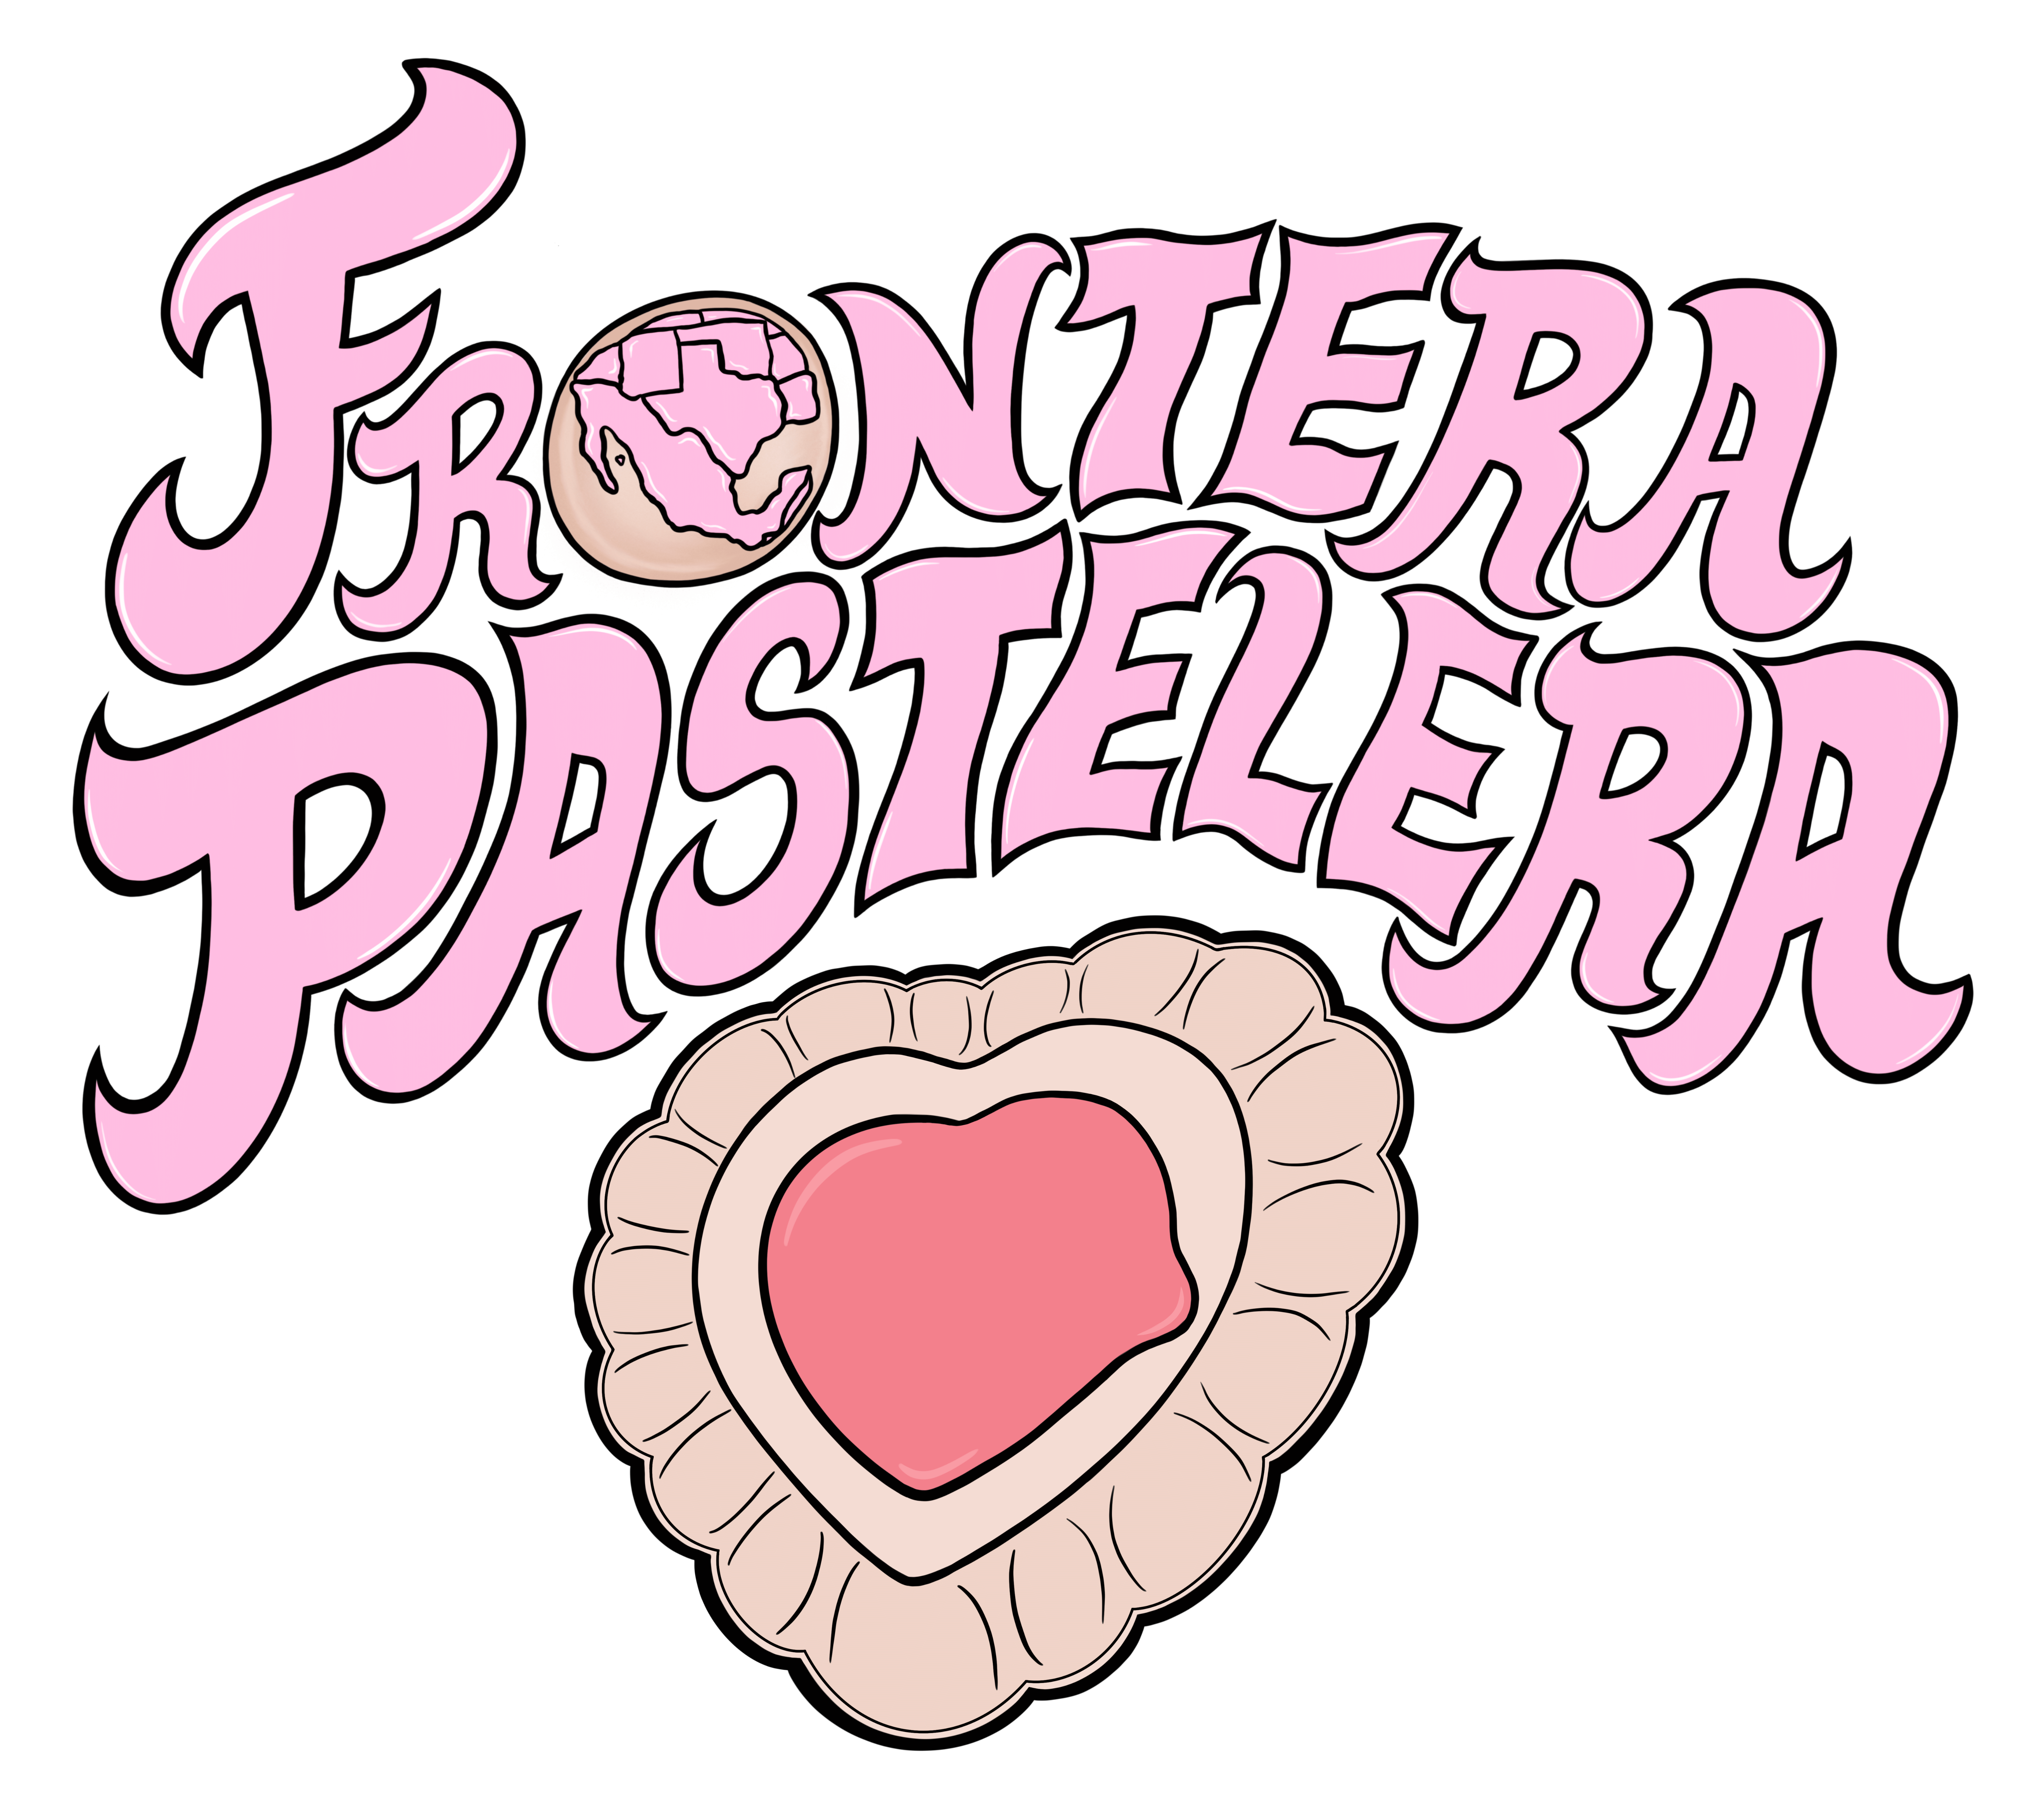 Frontera Pastelera logo